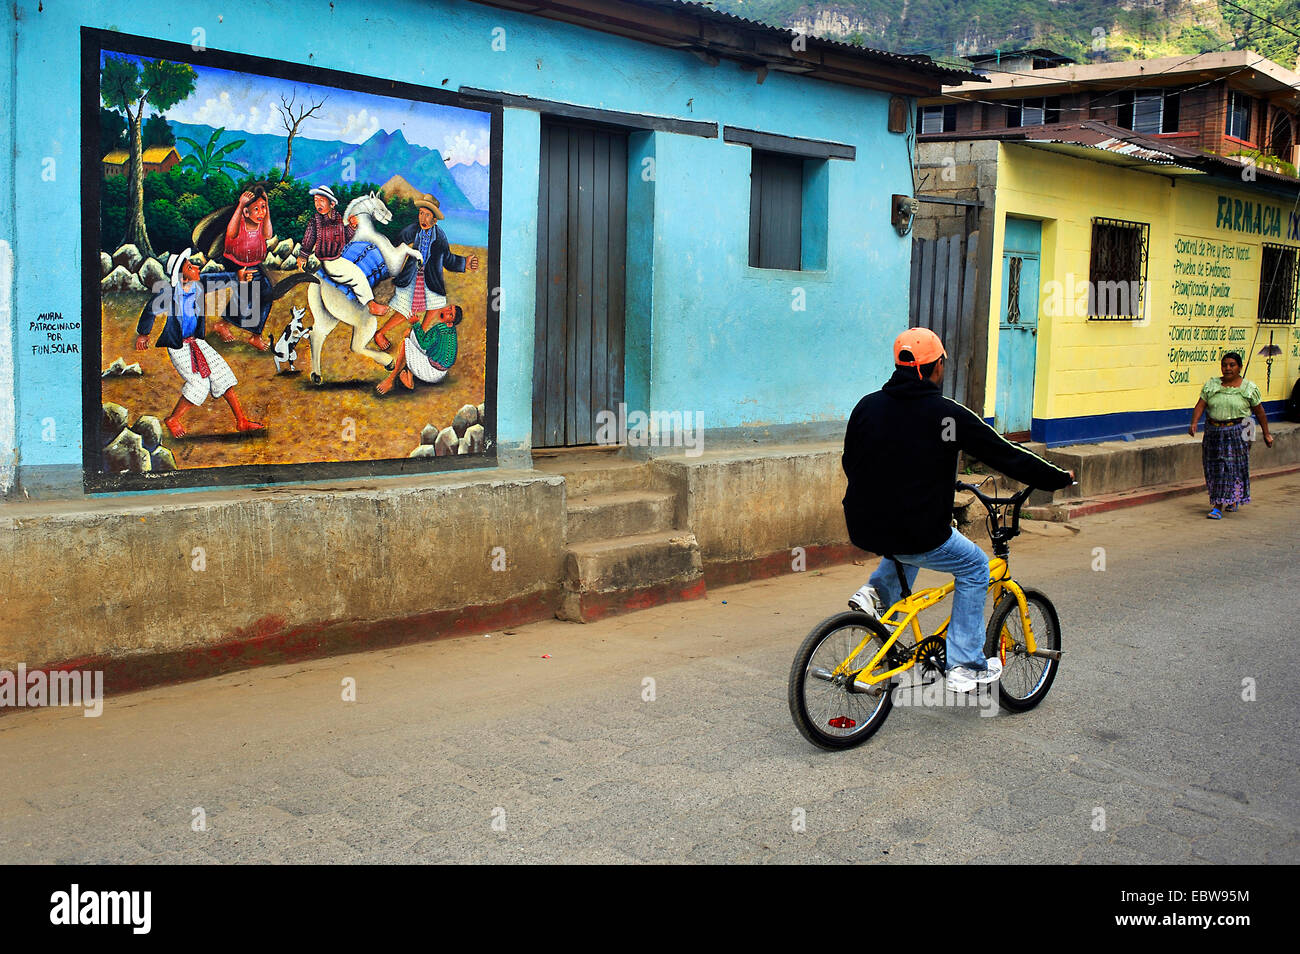 Chico en una bicicleta pasando una llamativa pintura mural en una casa fassade, Guatemala, Lago de Atitlán, Santa Cruz la Laguna Foto de stock